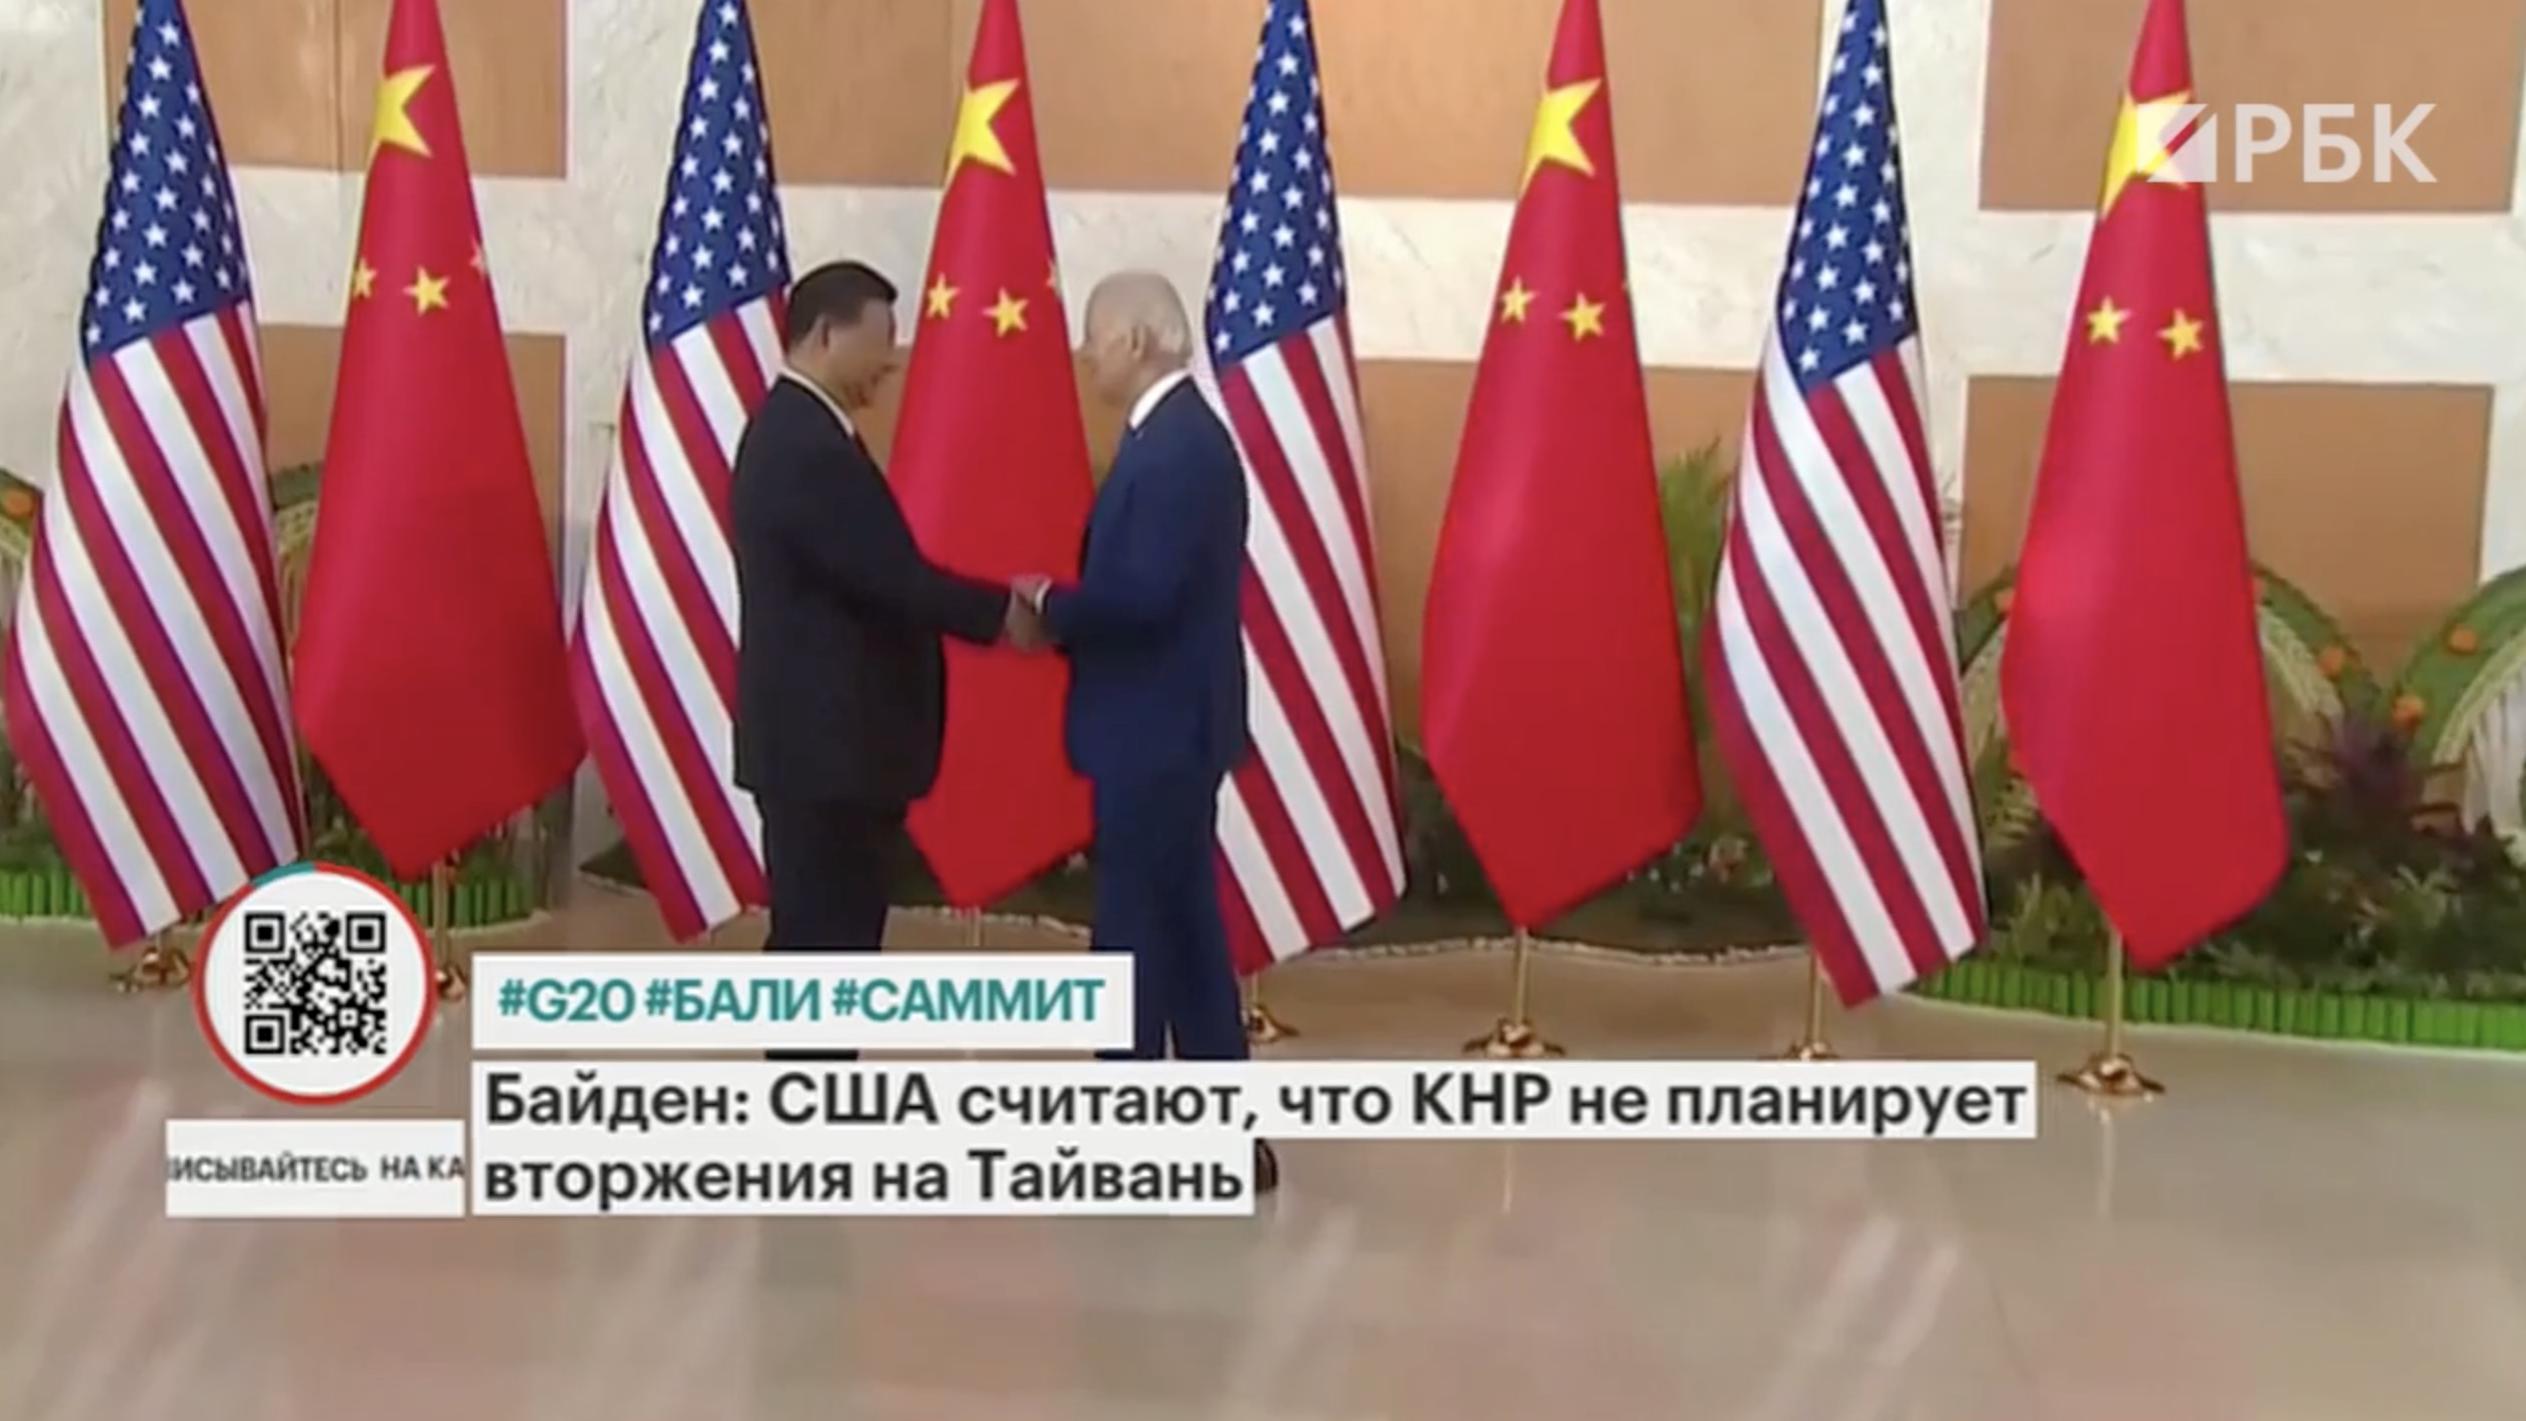 Байден и Си Цзиньпин договорились о визите госсекретаря США в Китай